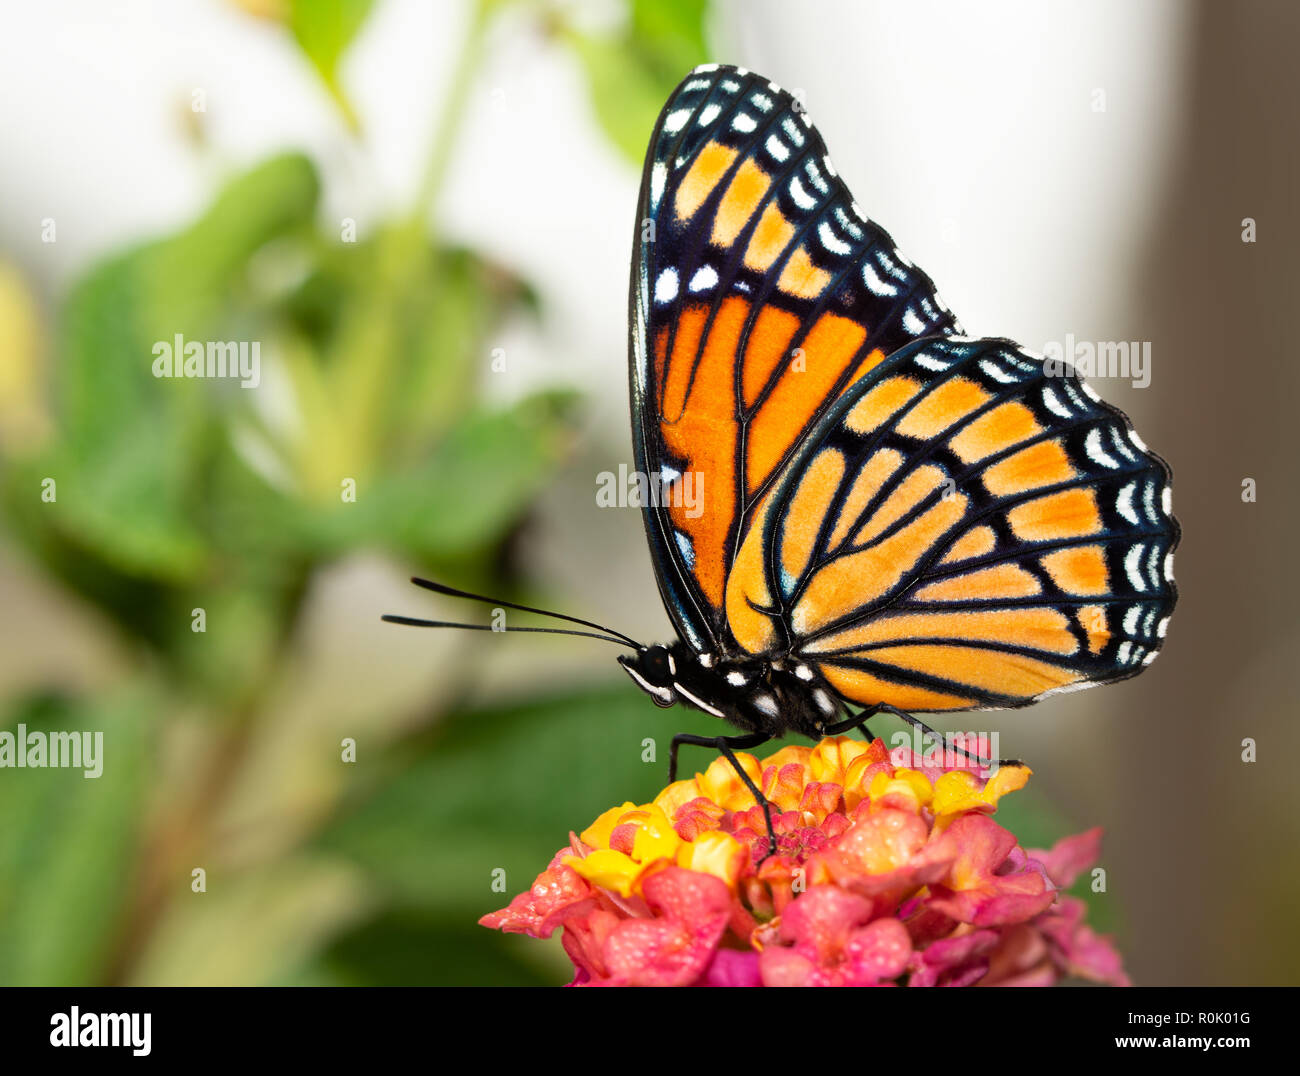 Vista ventral de una hermosa mariposa virrey en jardín de verano Foto de stock